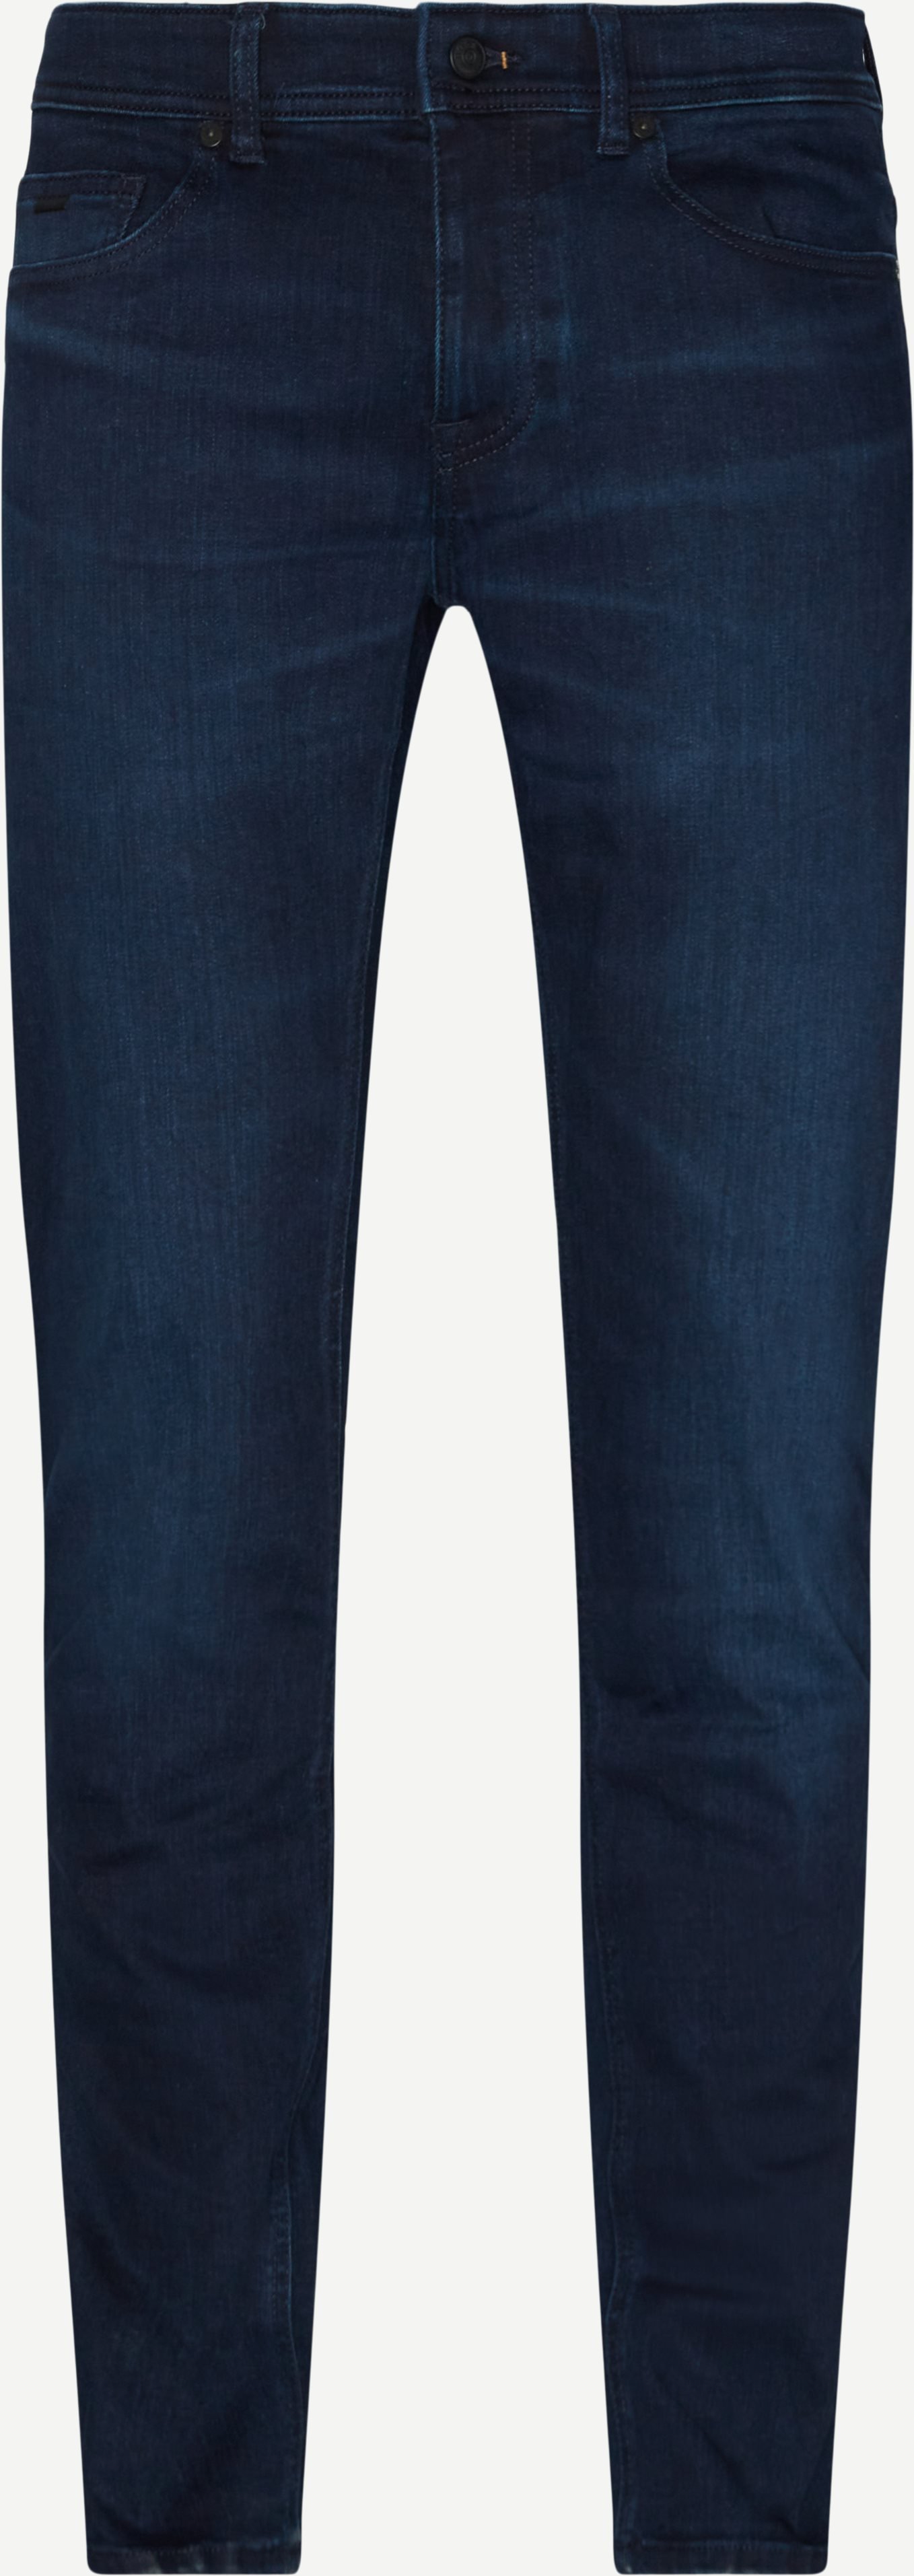 Delaware BC-L-P Represent Jeans - Jeans - Slim fit - Denim